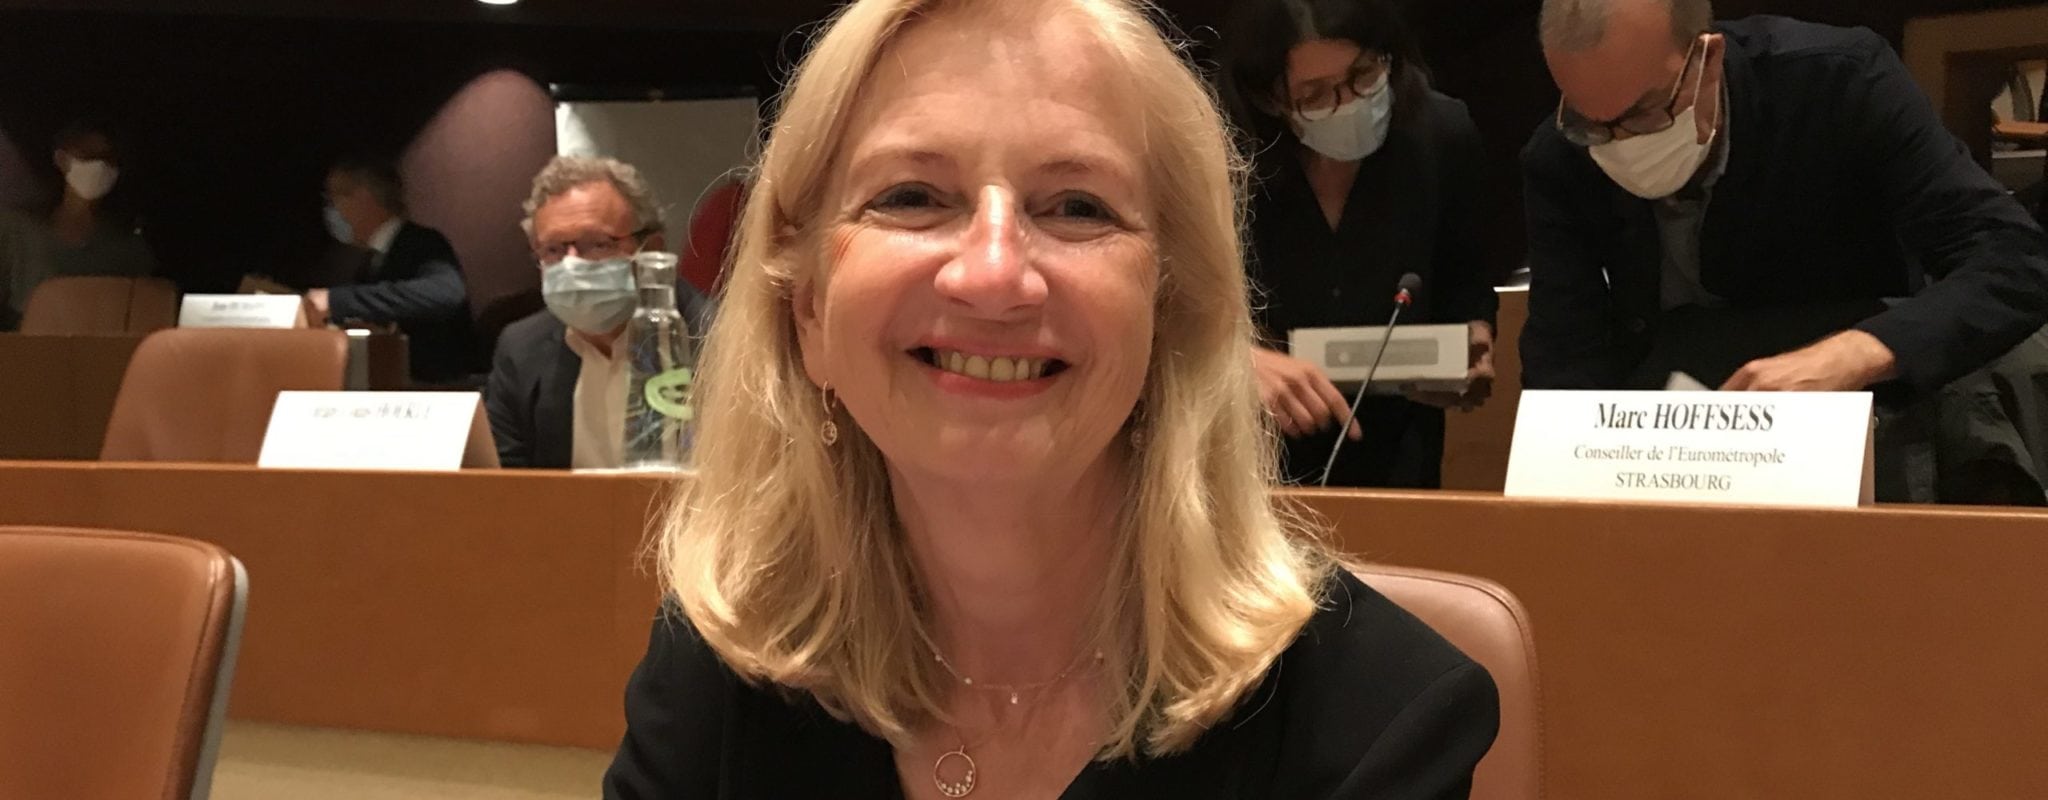 Pia Imbs élue présidente de l’Eurométropole de Strasbourg